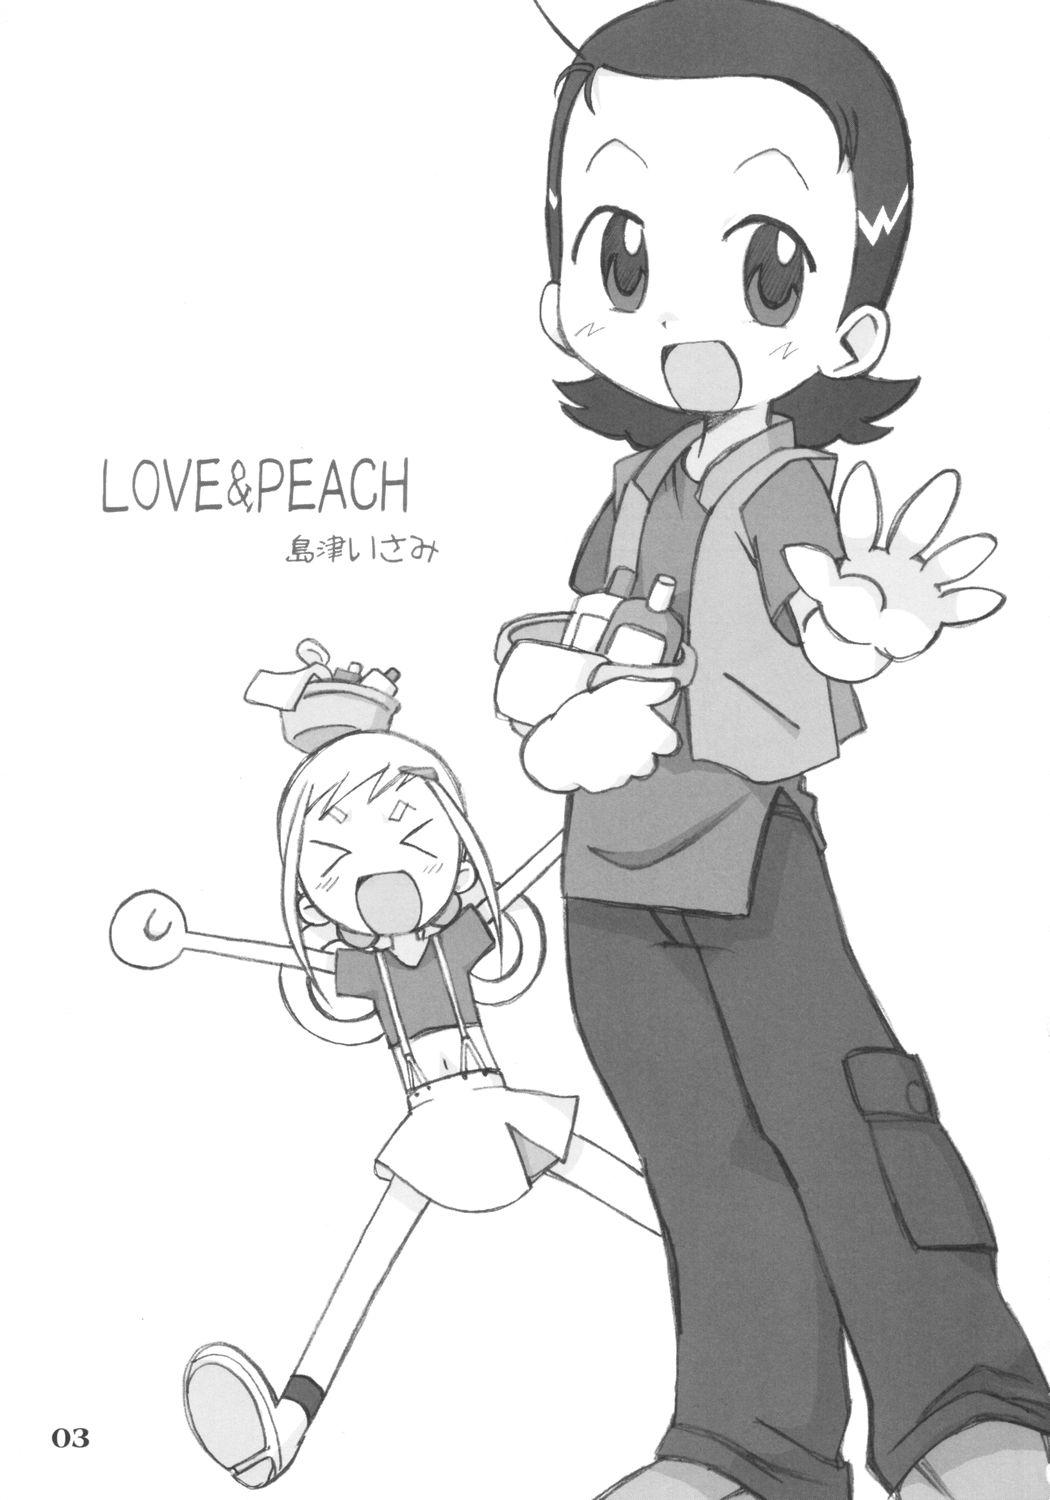 LOVE & PEACH 1